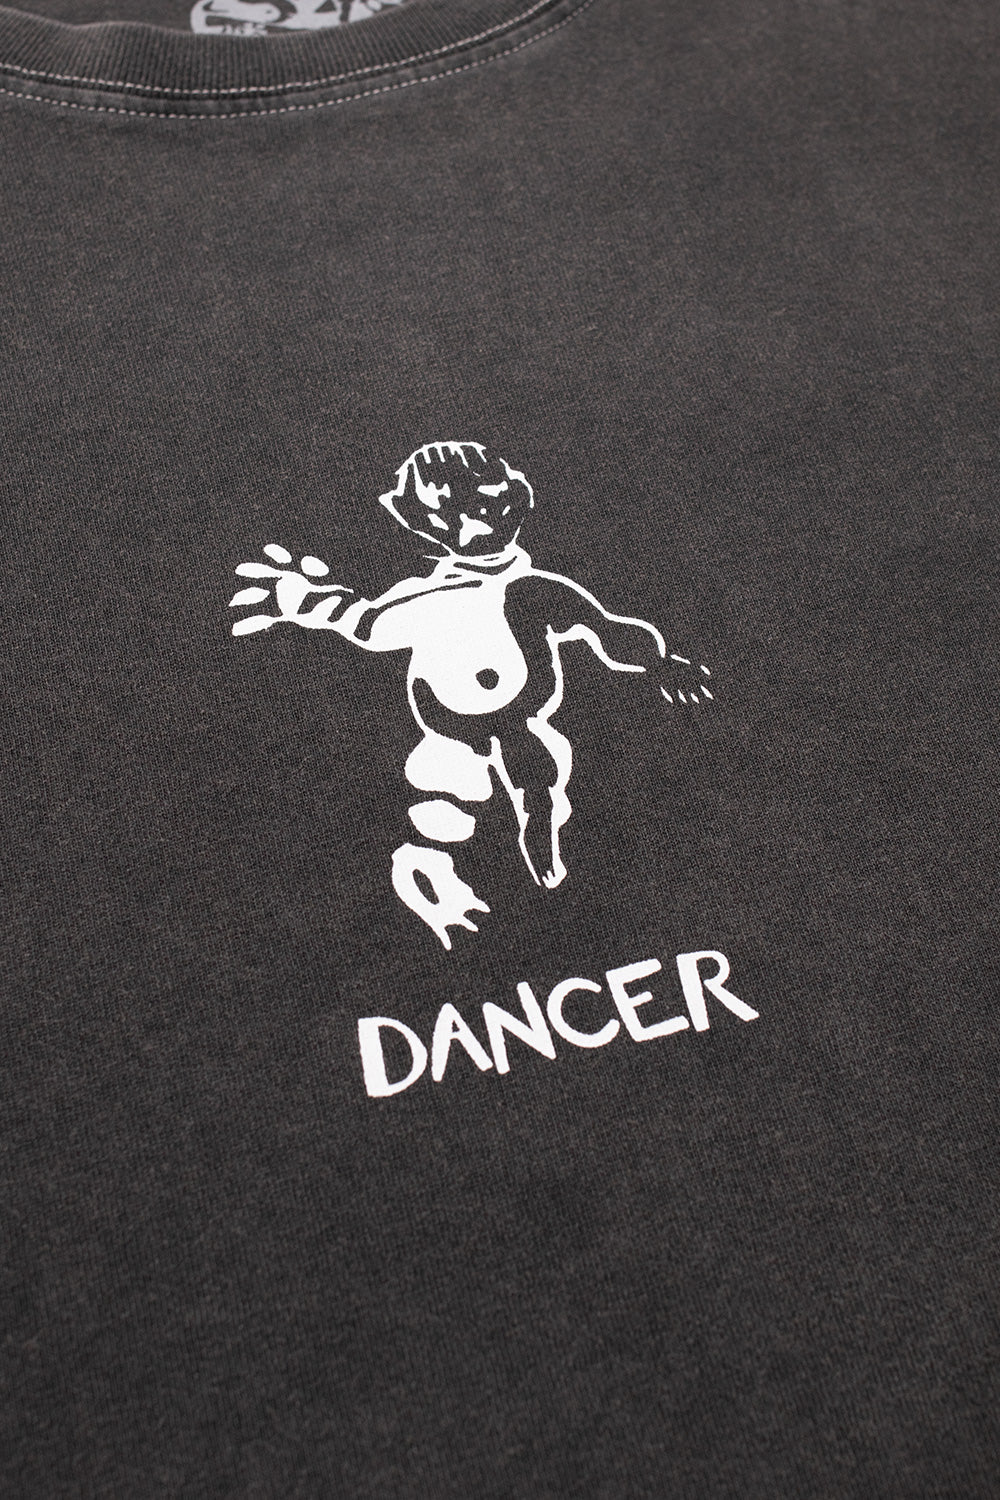 Dancer OG Logo T-Shirt Washed Black (White Stitching) - BONKERS